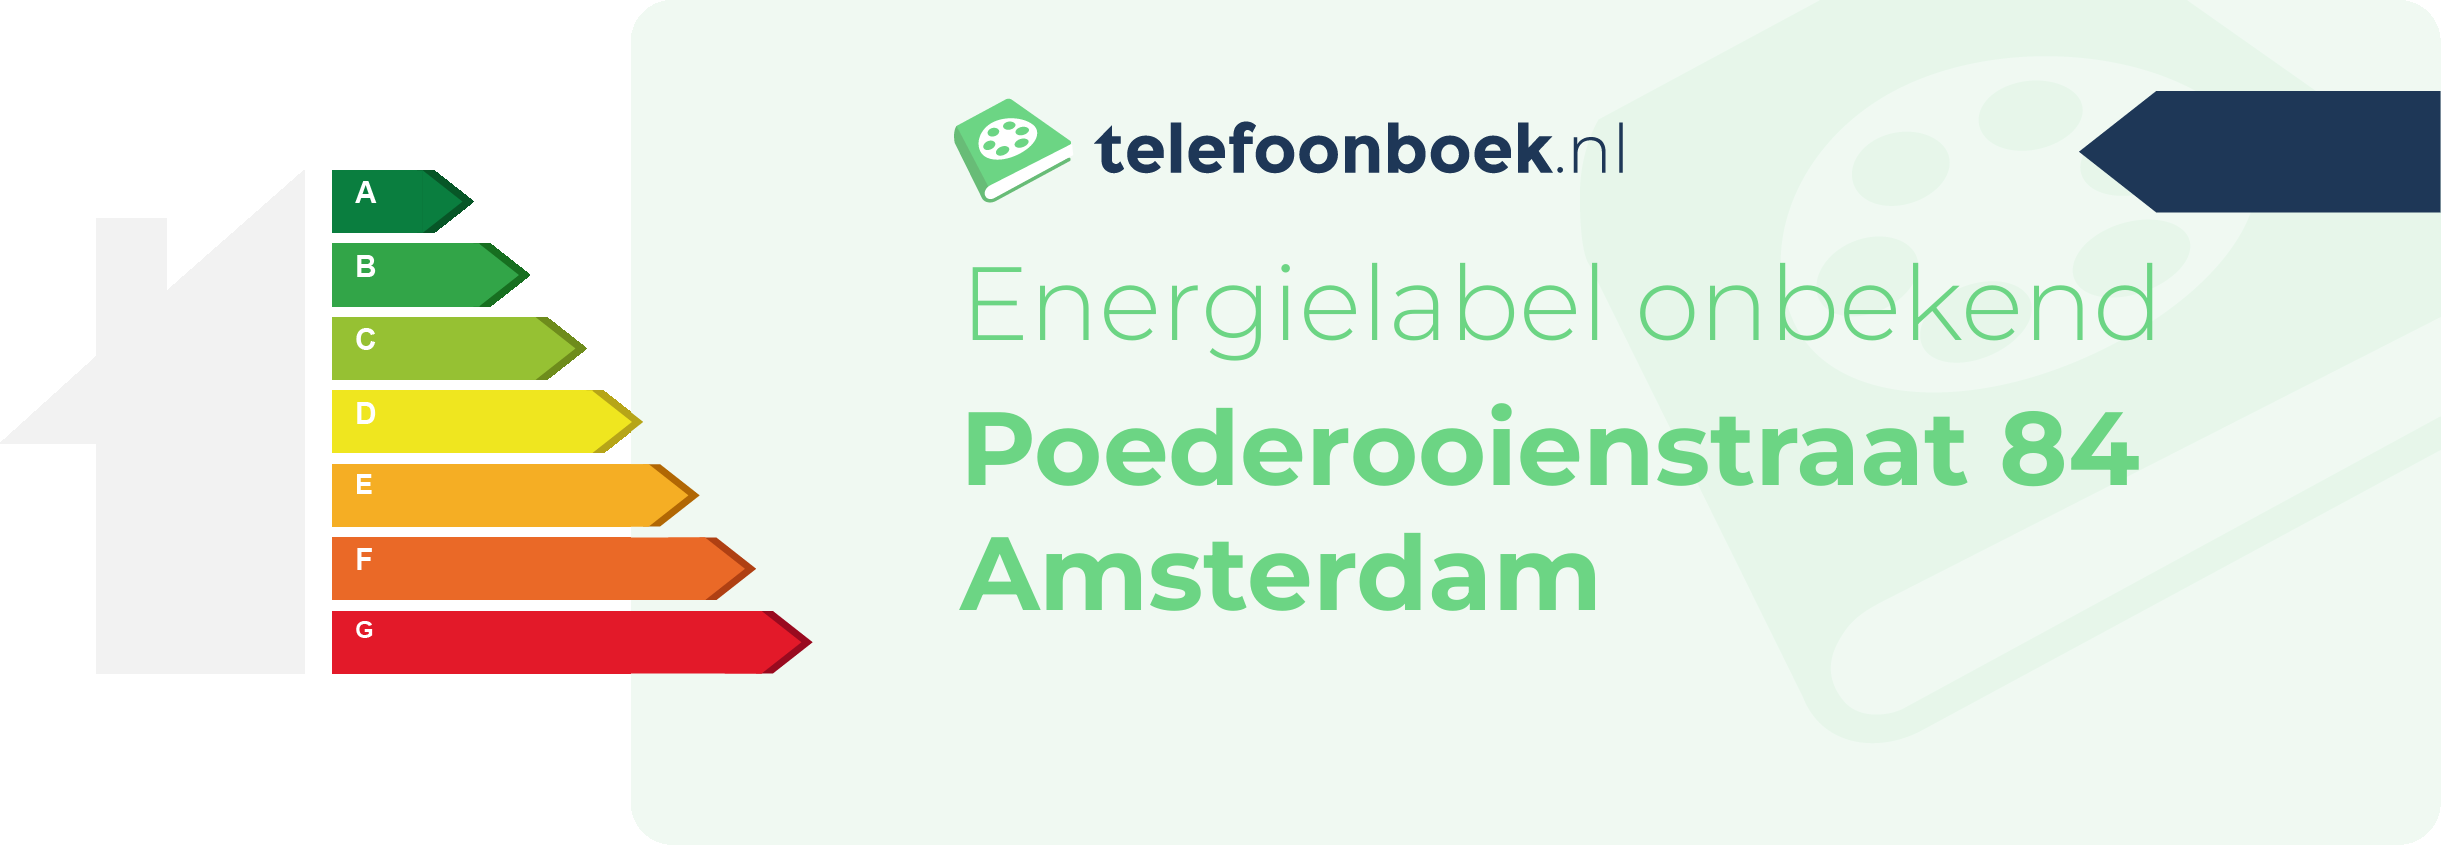 Energielabel Poederooienstraat 84 Amsterdam